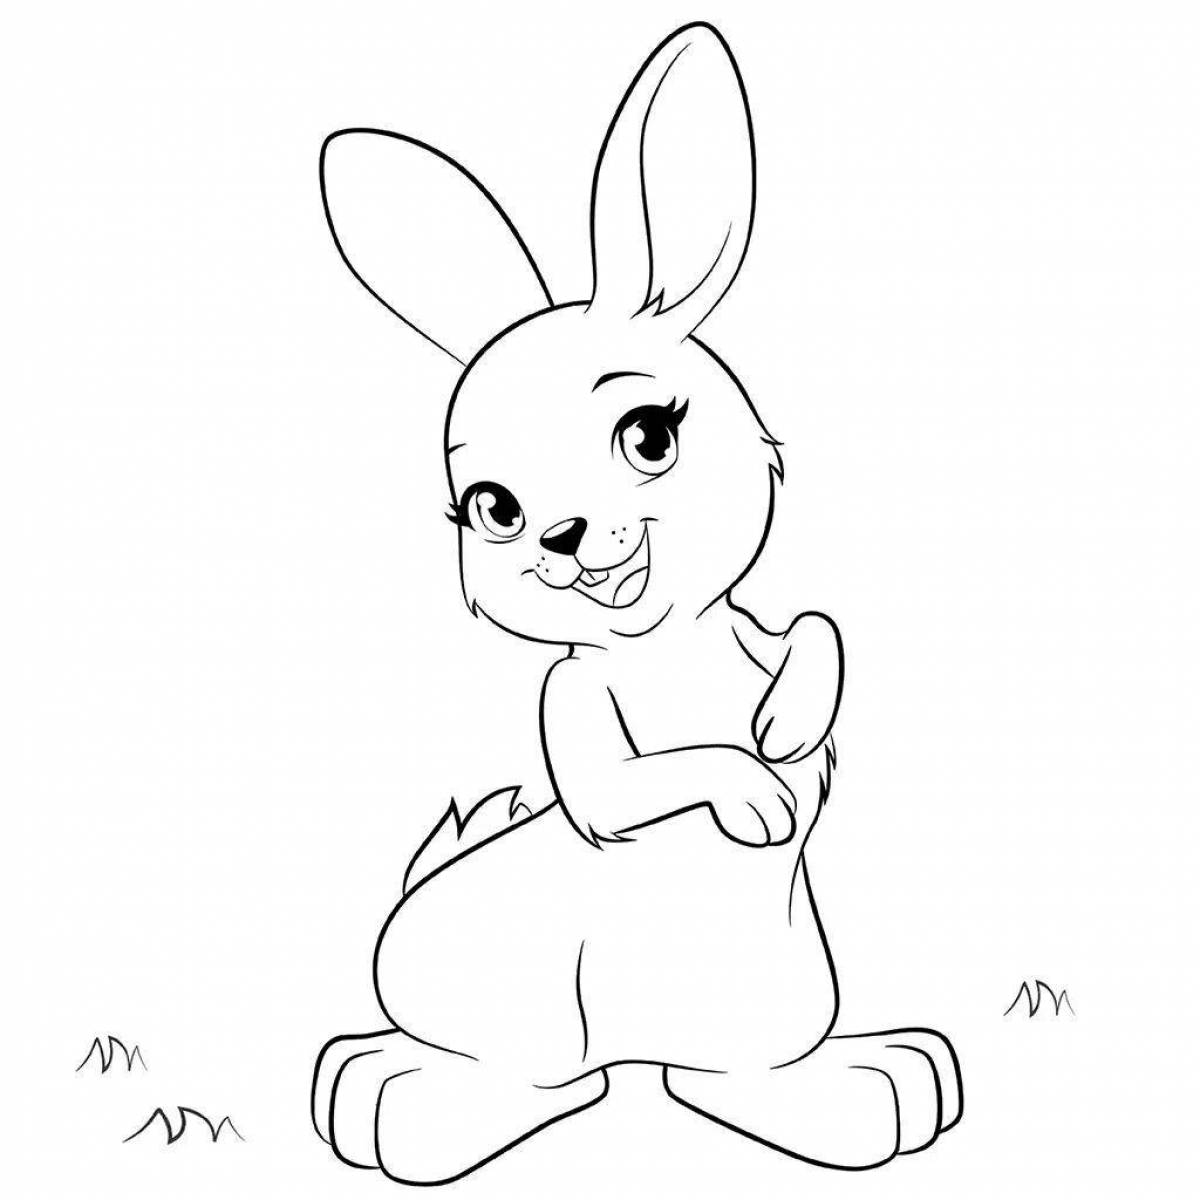 Adorable cartoon hare coloring book